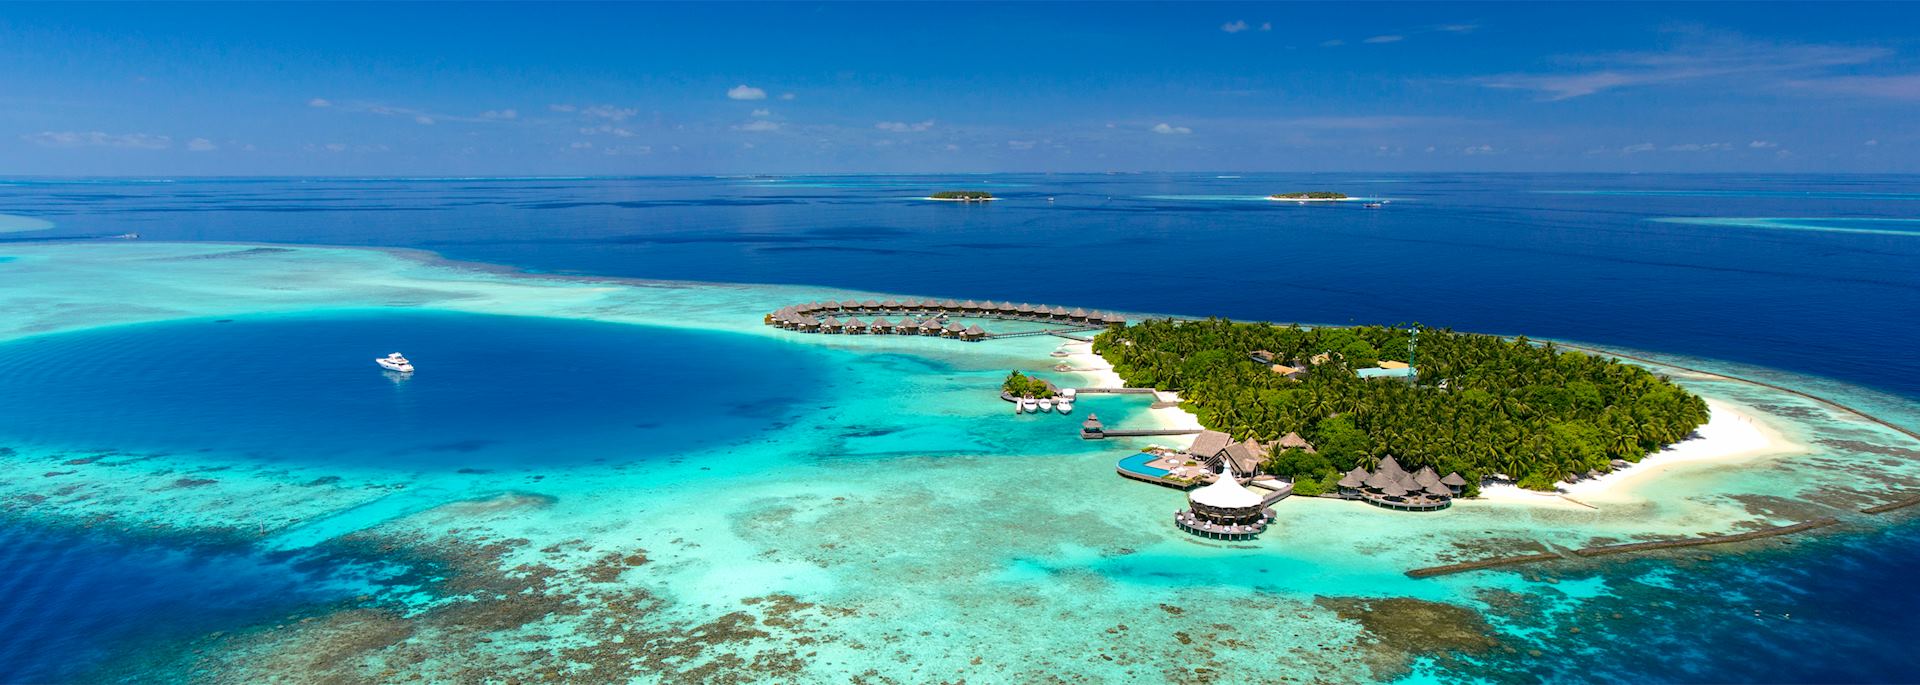 Aerial view of Baros Maldives